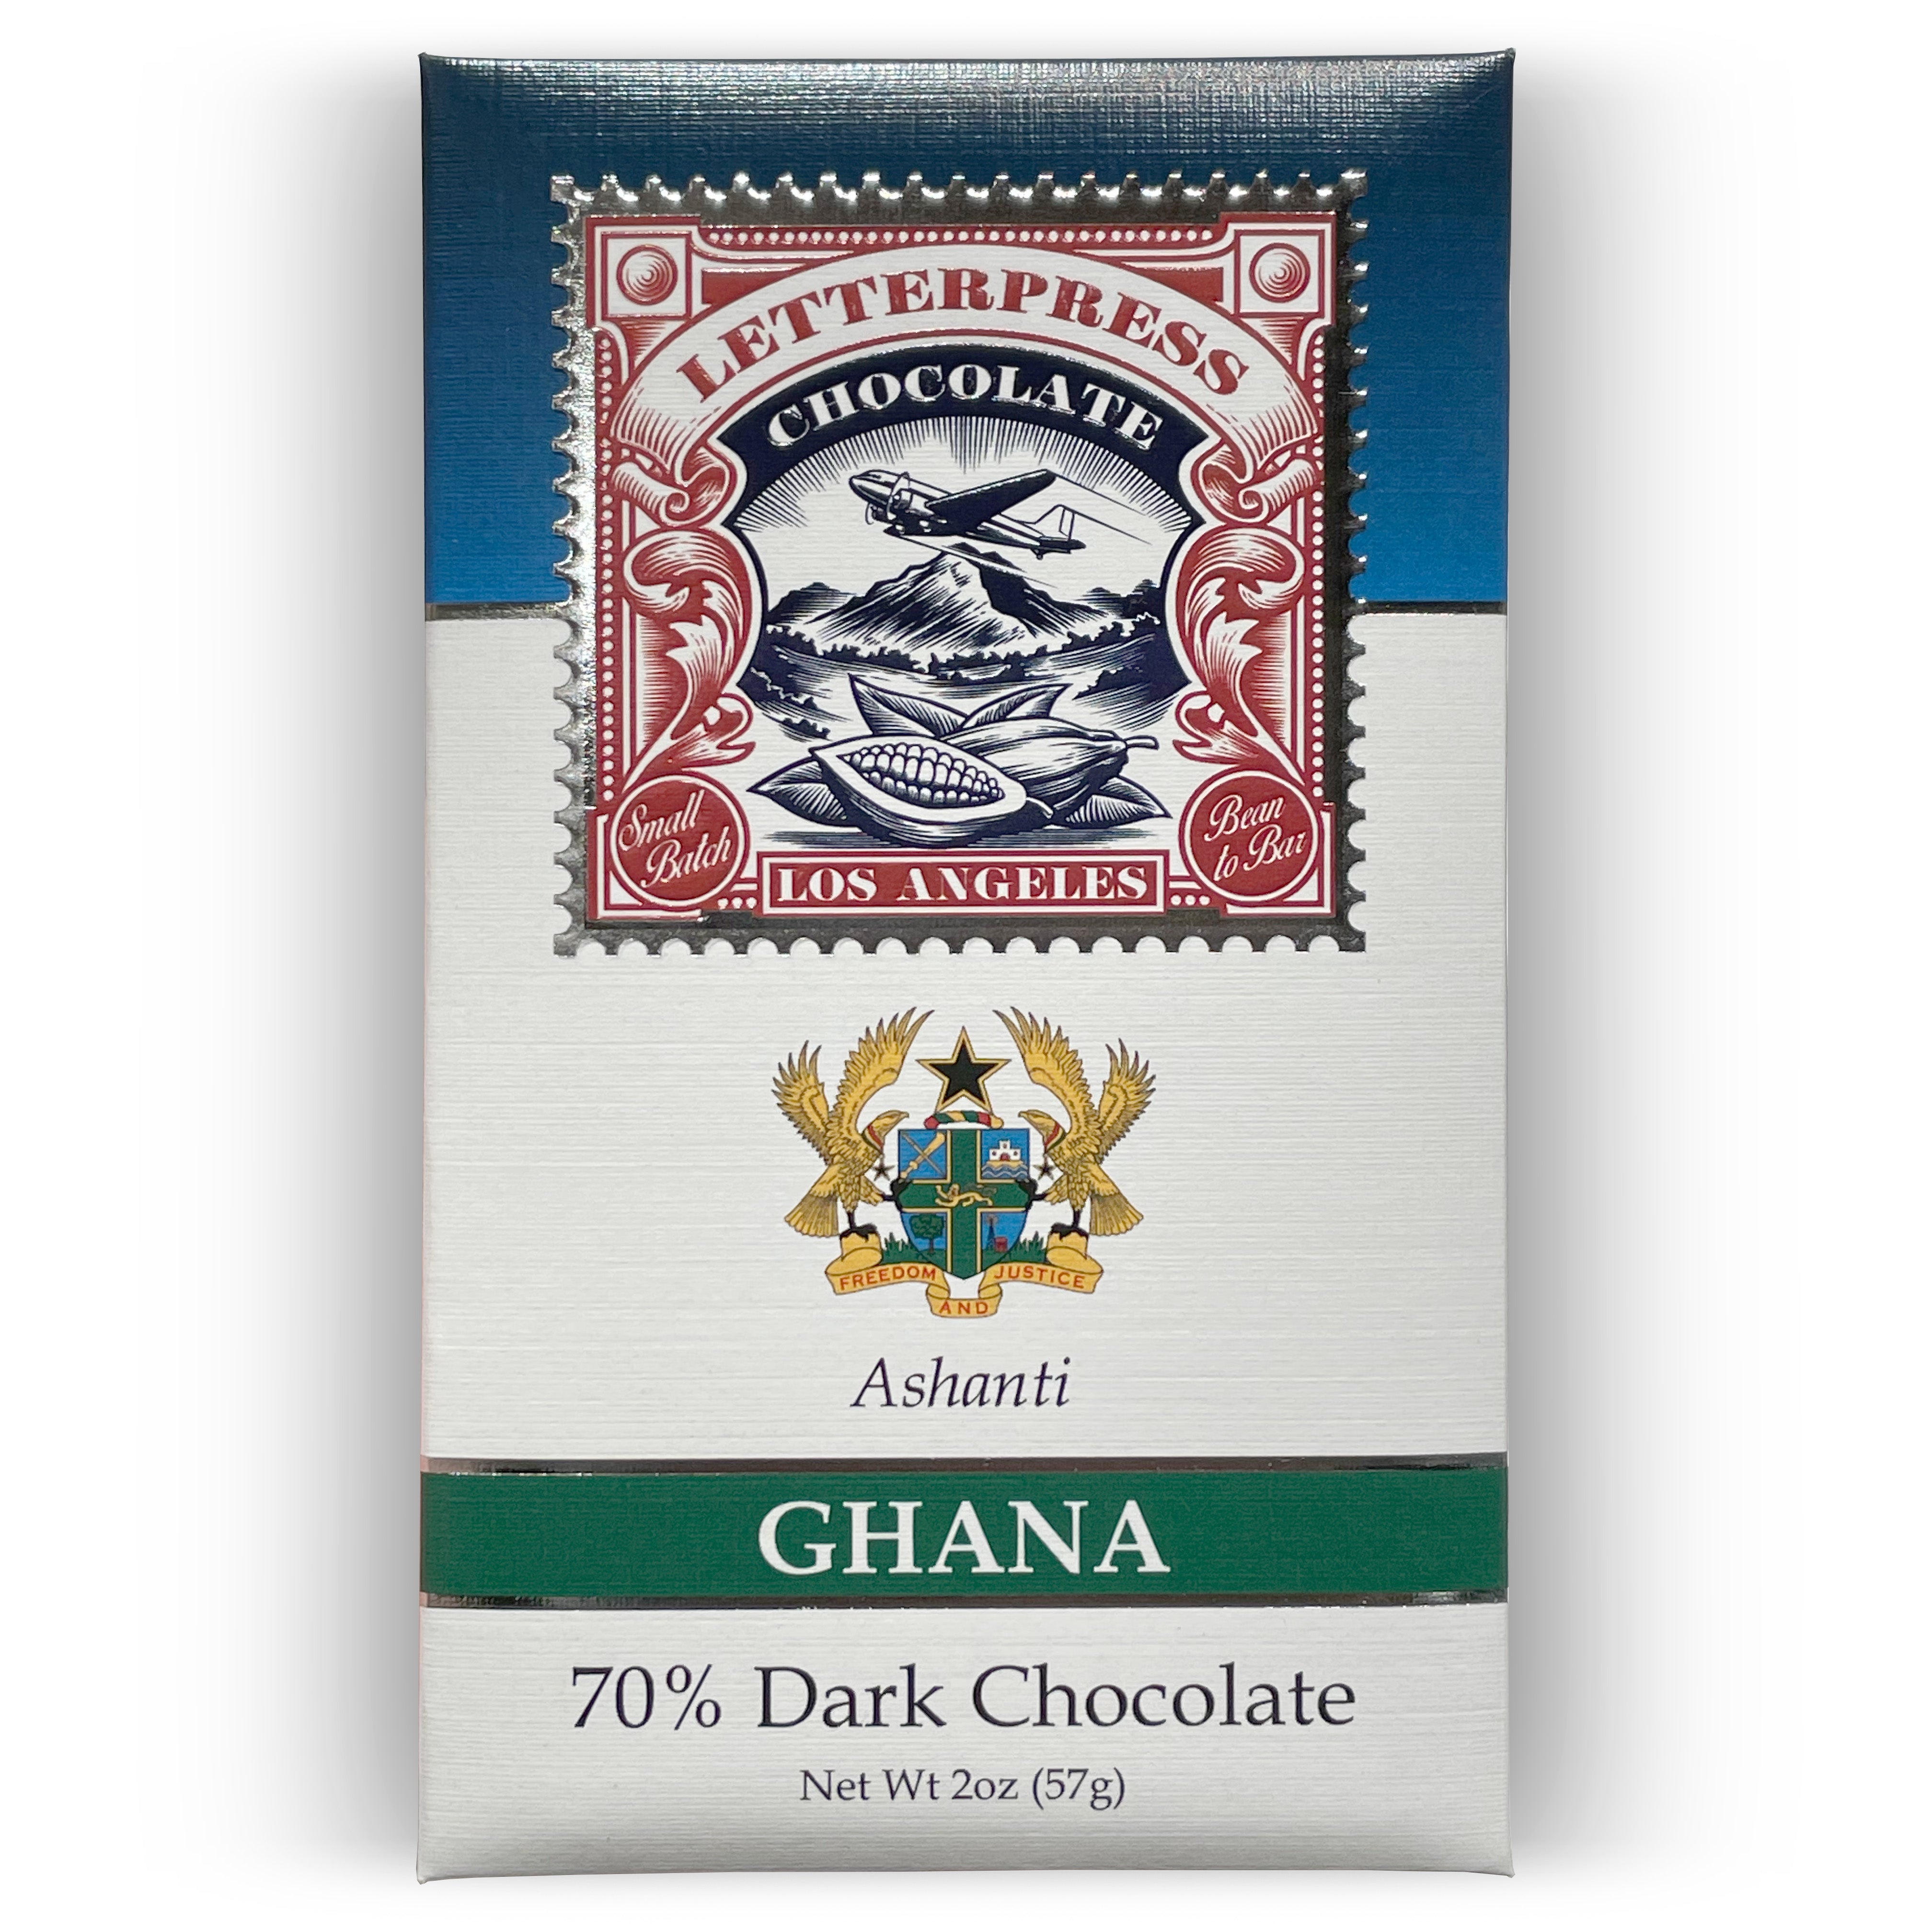 Ashanti Ghana 70% Dark Chocolate packaging on white background